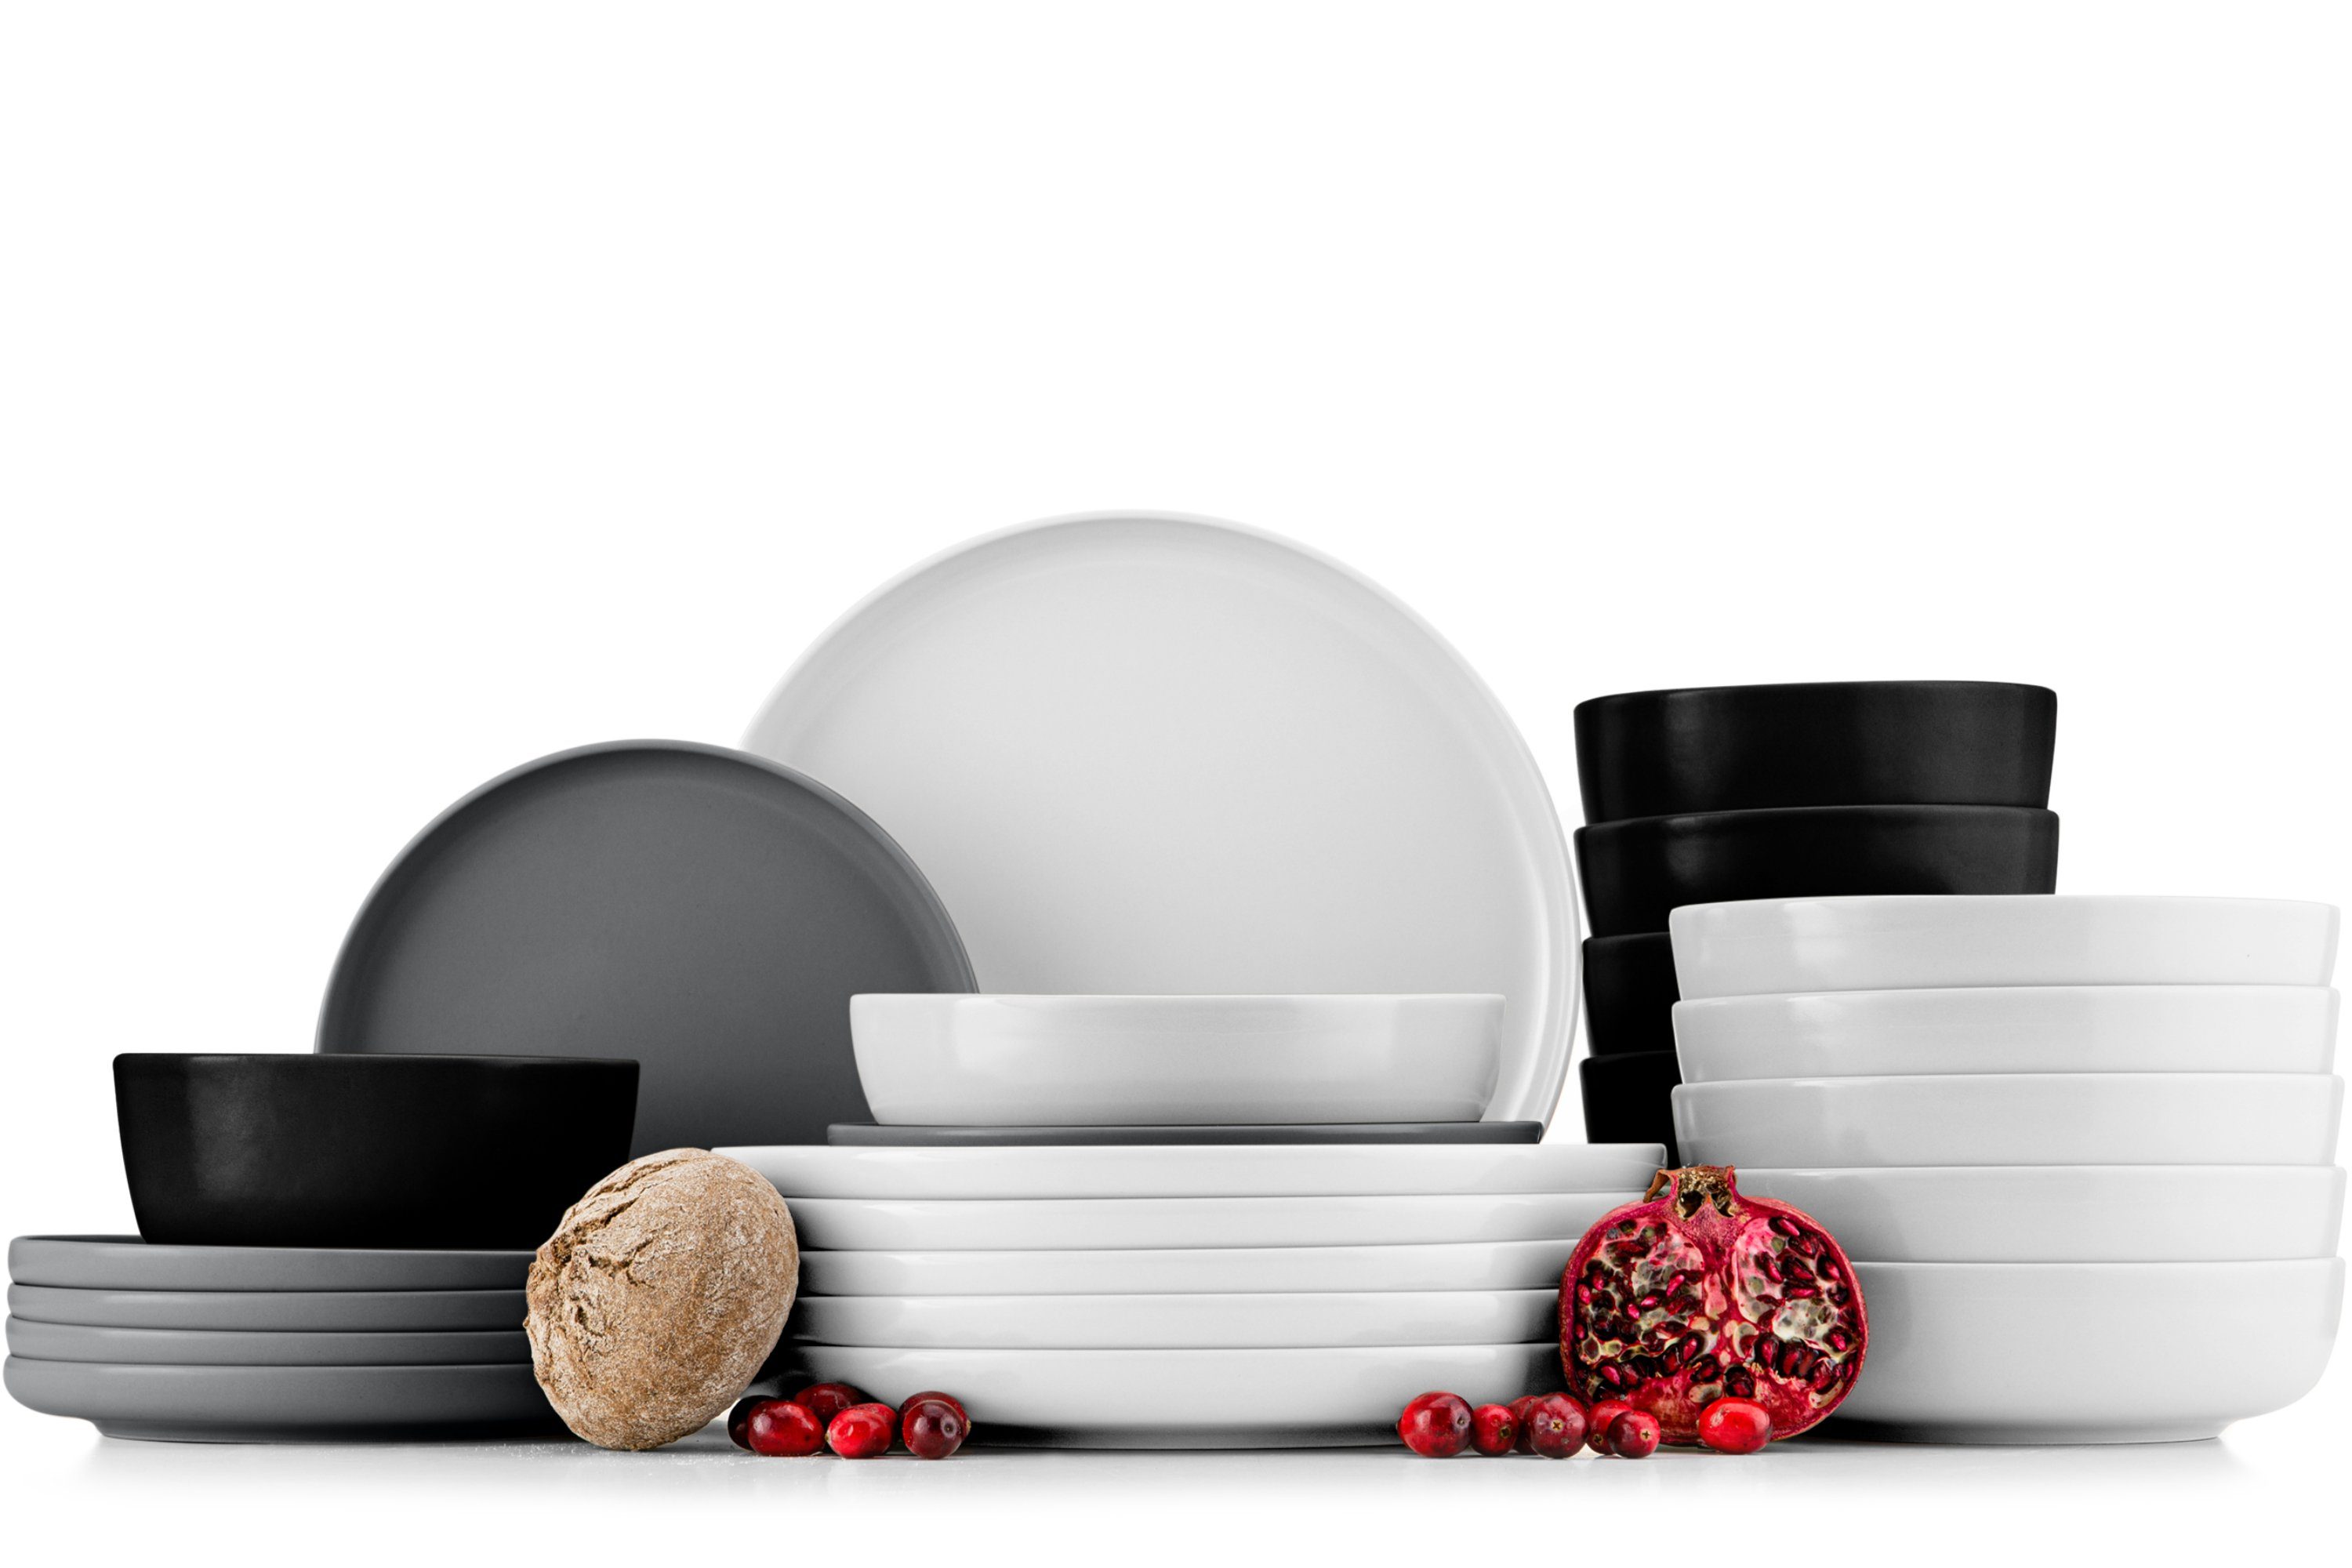 Konsimo Kombiservice VICTO Geschirrset hergestellt in der EU (24-tlg), 6 Personen, Steingut, spülmaschinengeeignet, mikrowellengeeignet, mehrfarbig, matt matt weiß/grau/schwarz/weiß